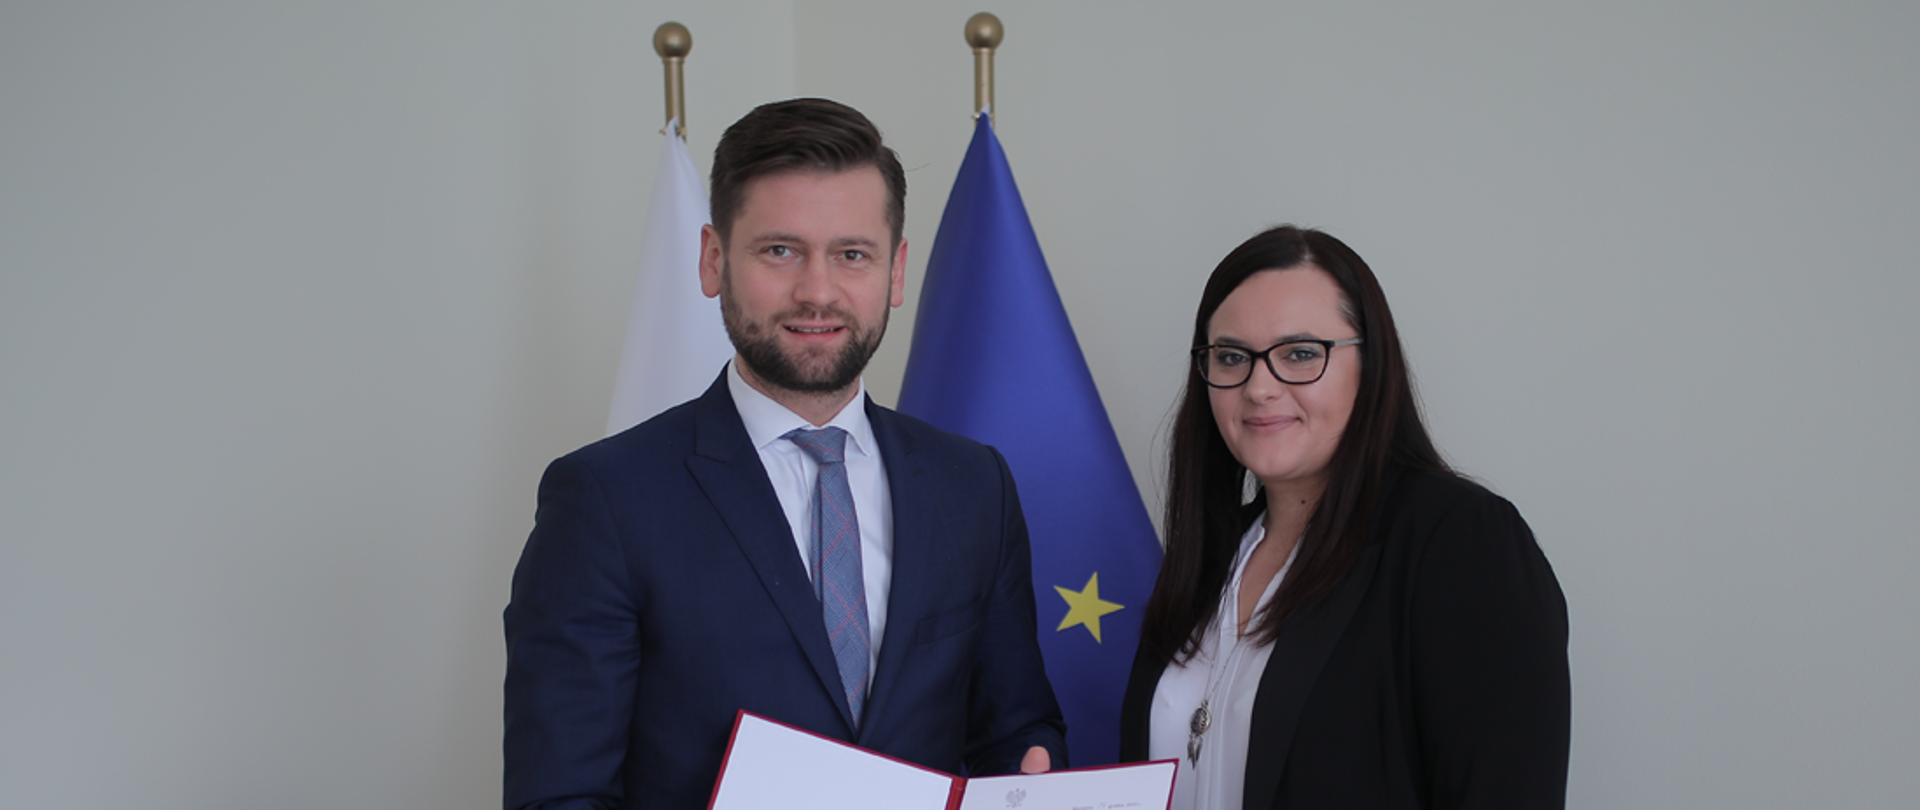 Na tle flag Polski i UE stoi minister Małgorzata Jarosińska-Jedynak oraz nowy wiceminister funduszy i polityki regionalnej Kamil Bortniczuk